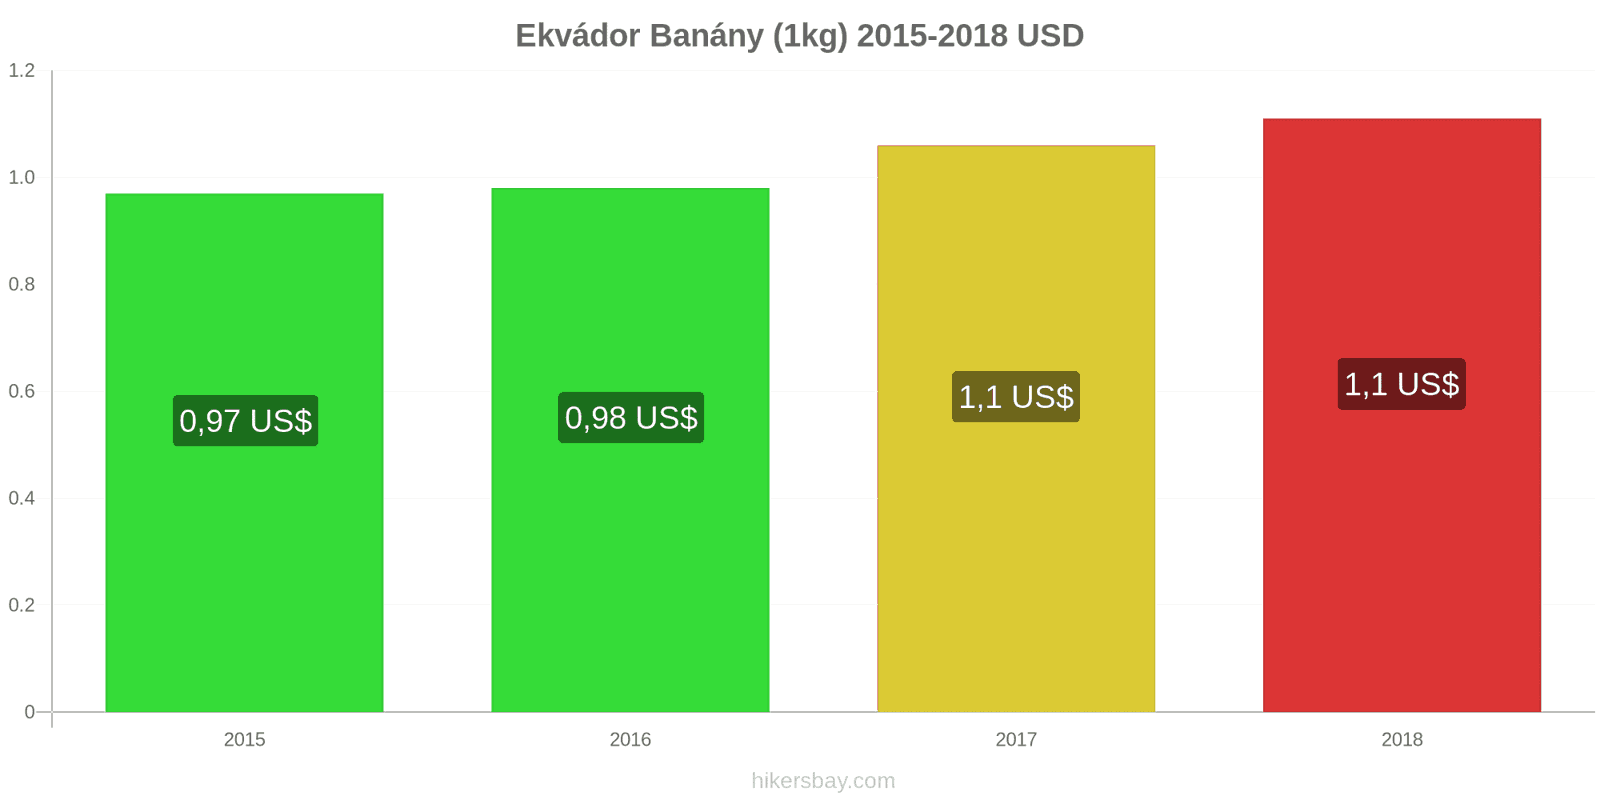 Ekvádor změny cen Banány (1kg) hikersbay.com